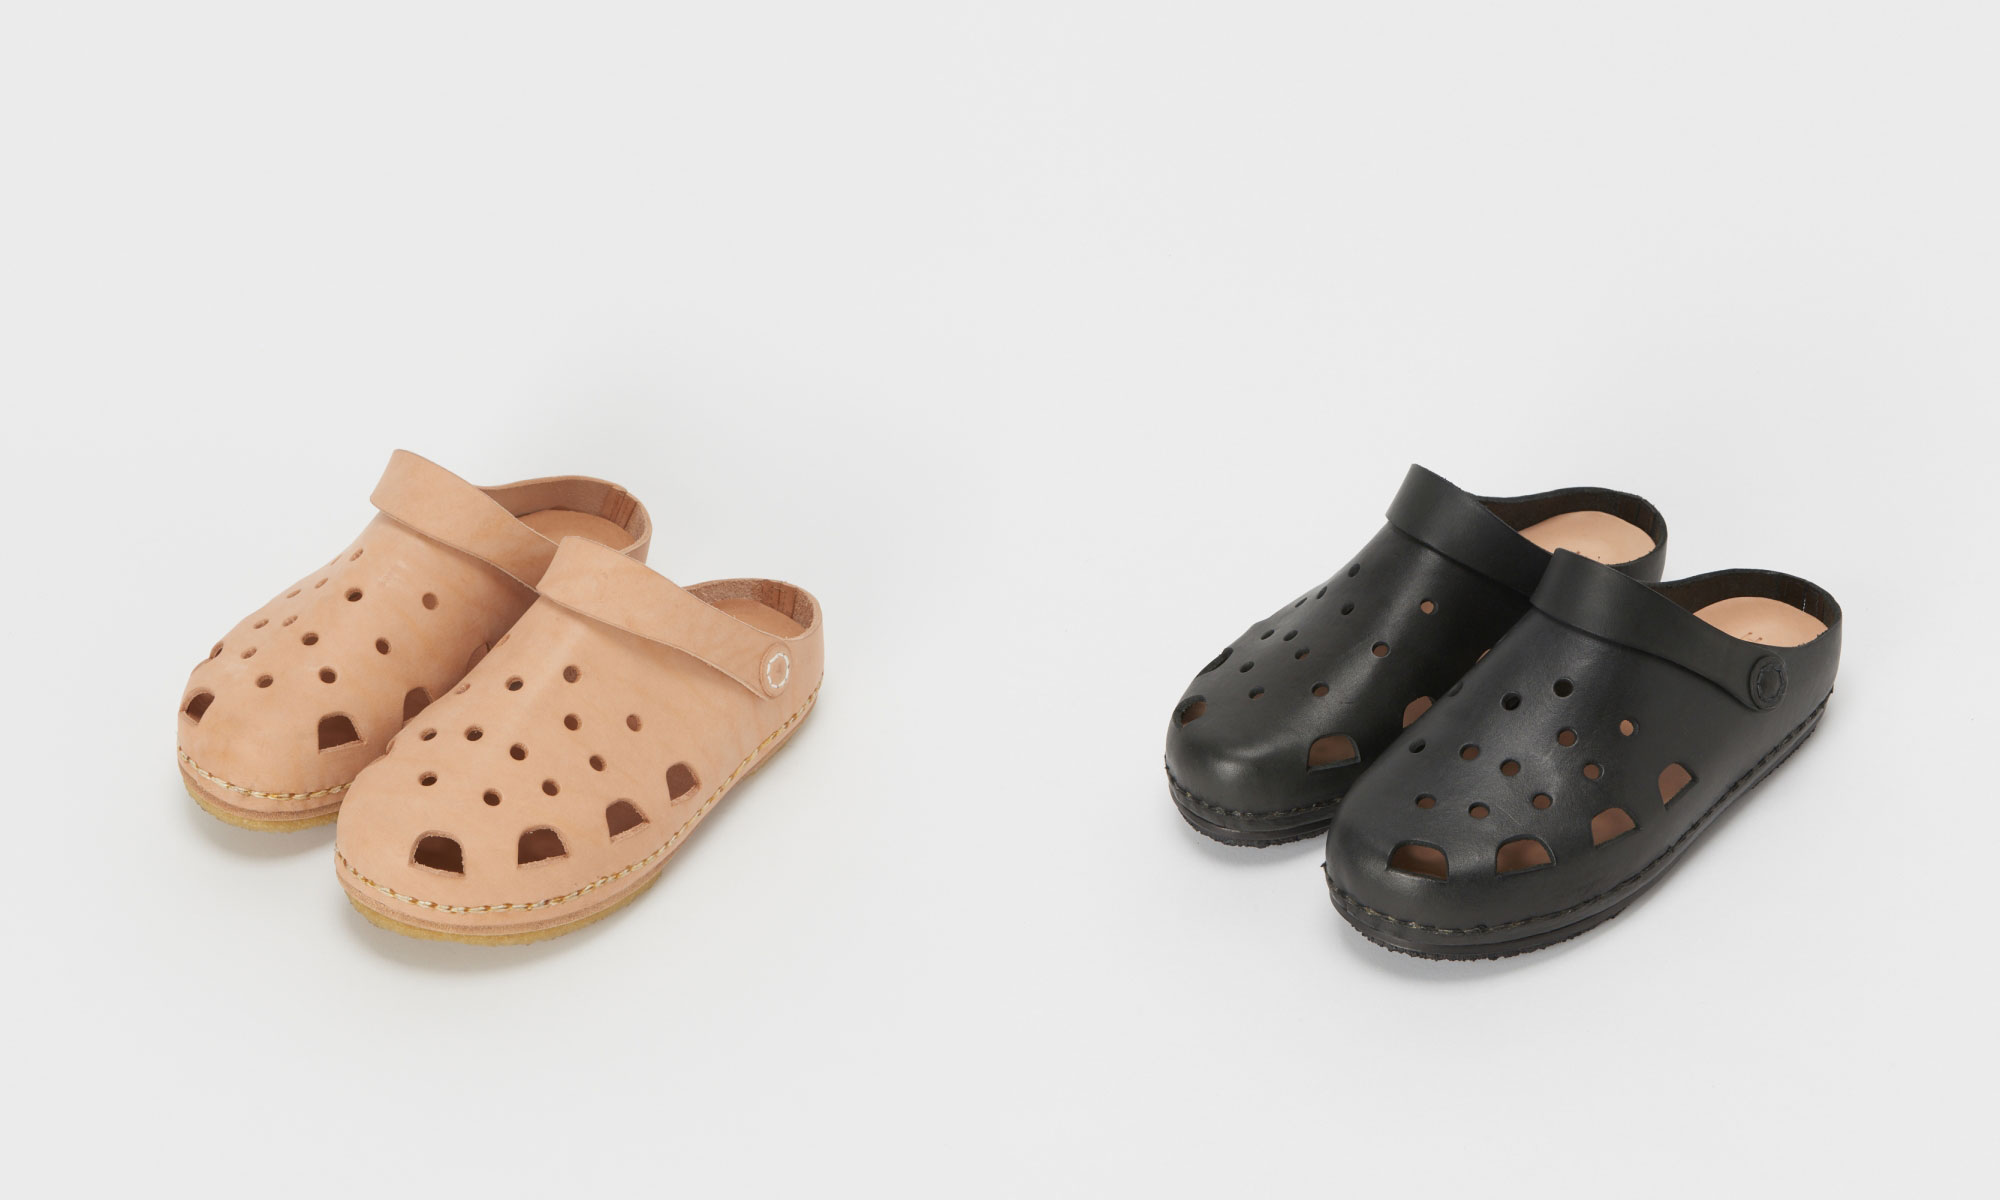 来自 Hender Scheme 的皮质 Crocs 洞洞鞋正式发售